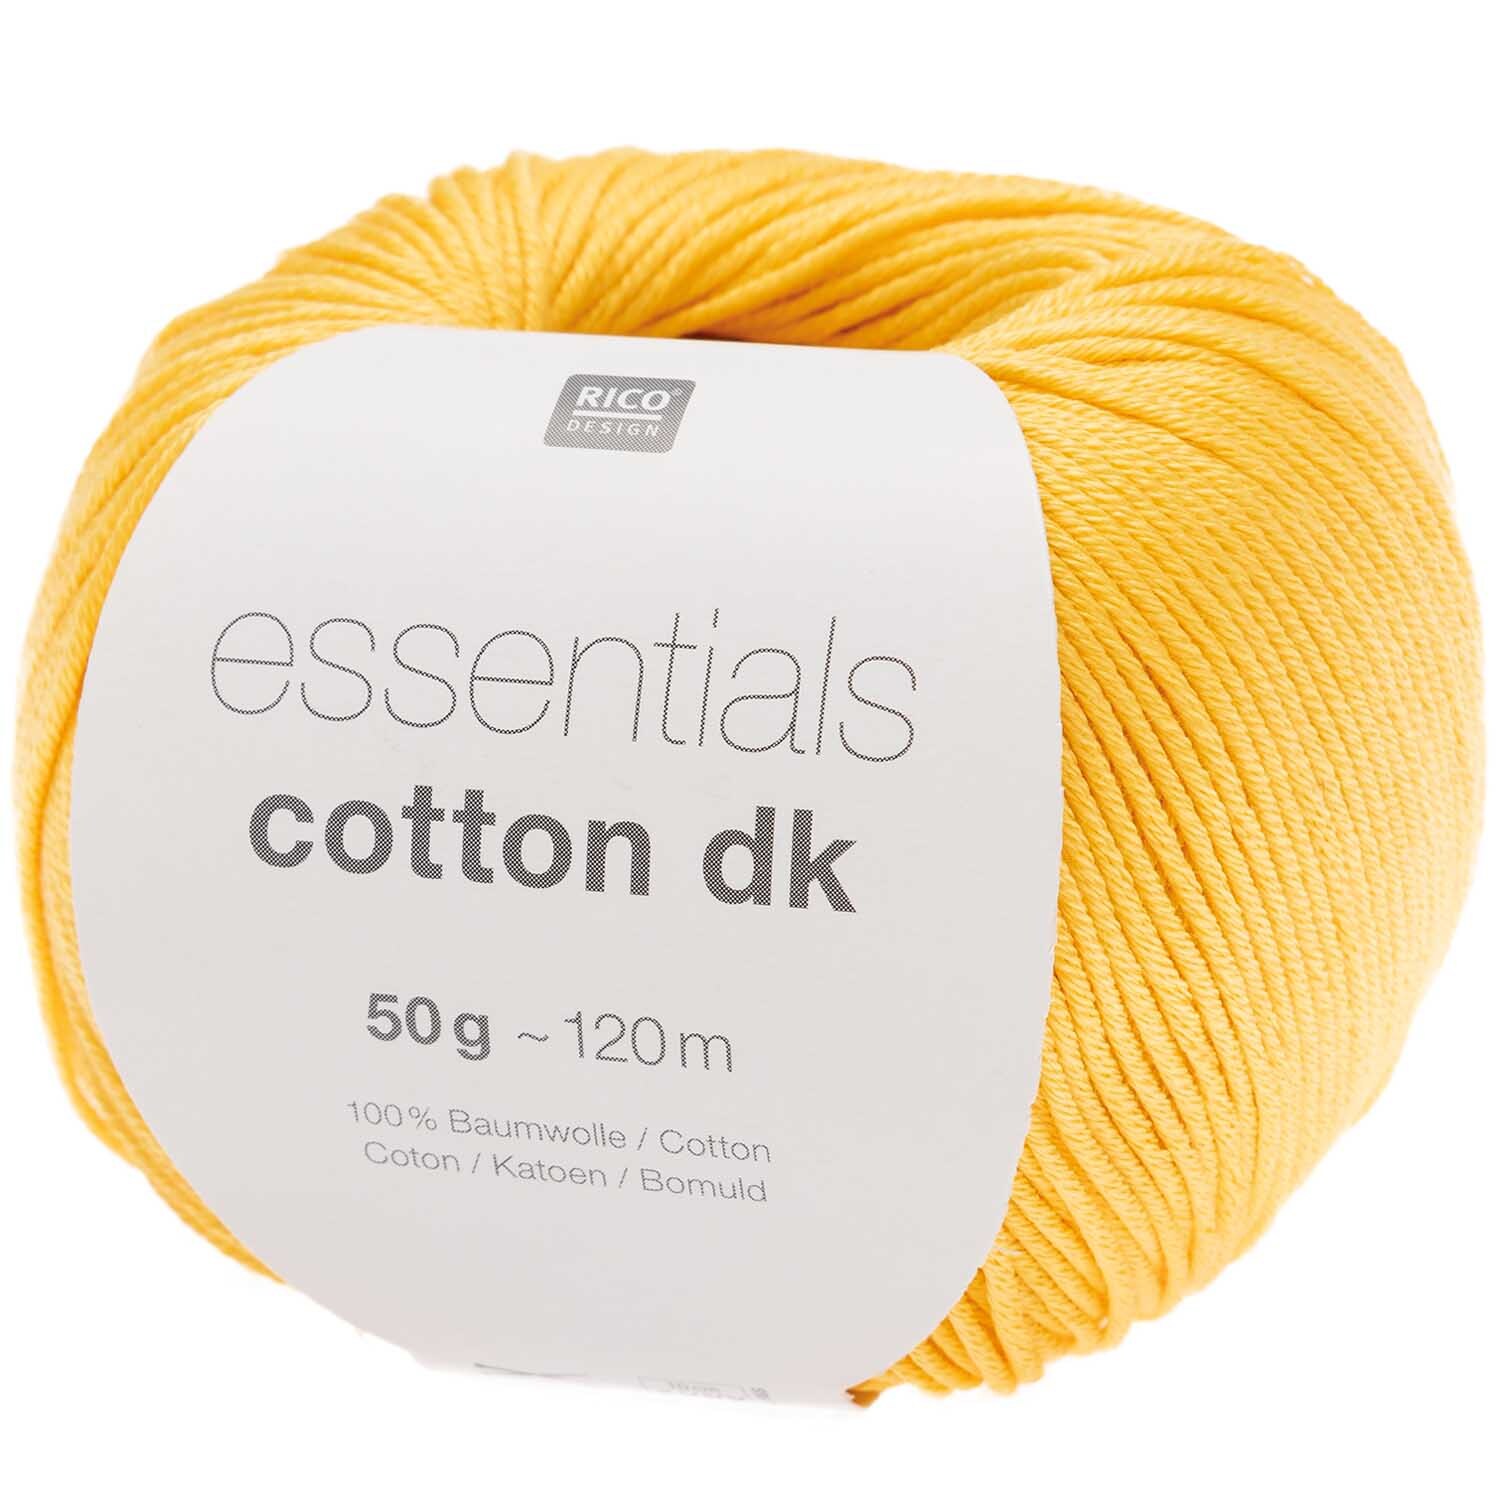 Essentials Cotton dk